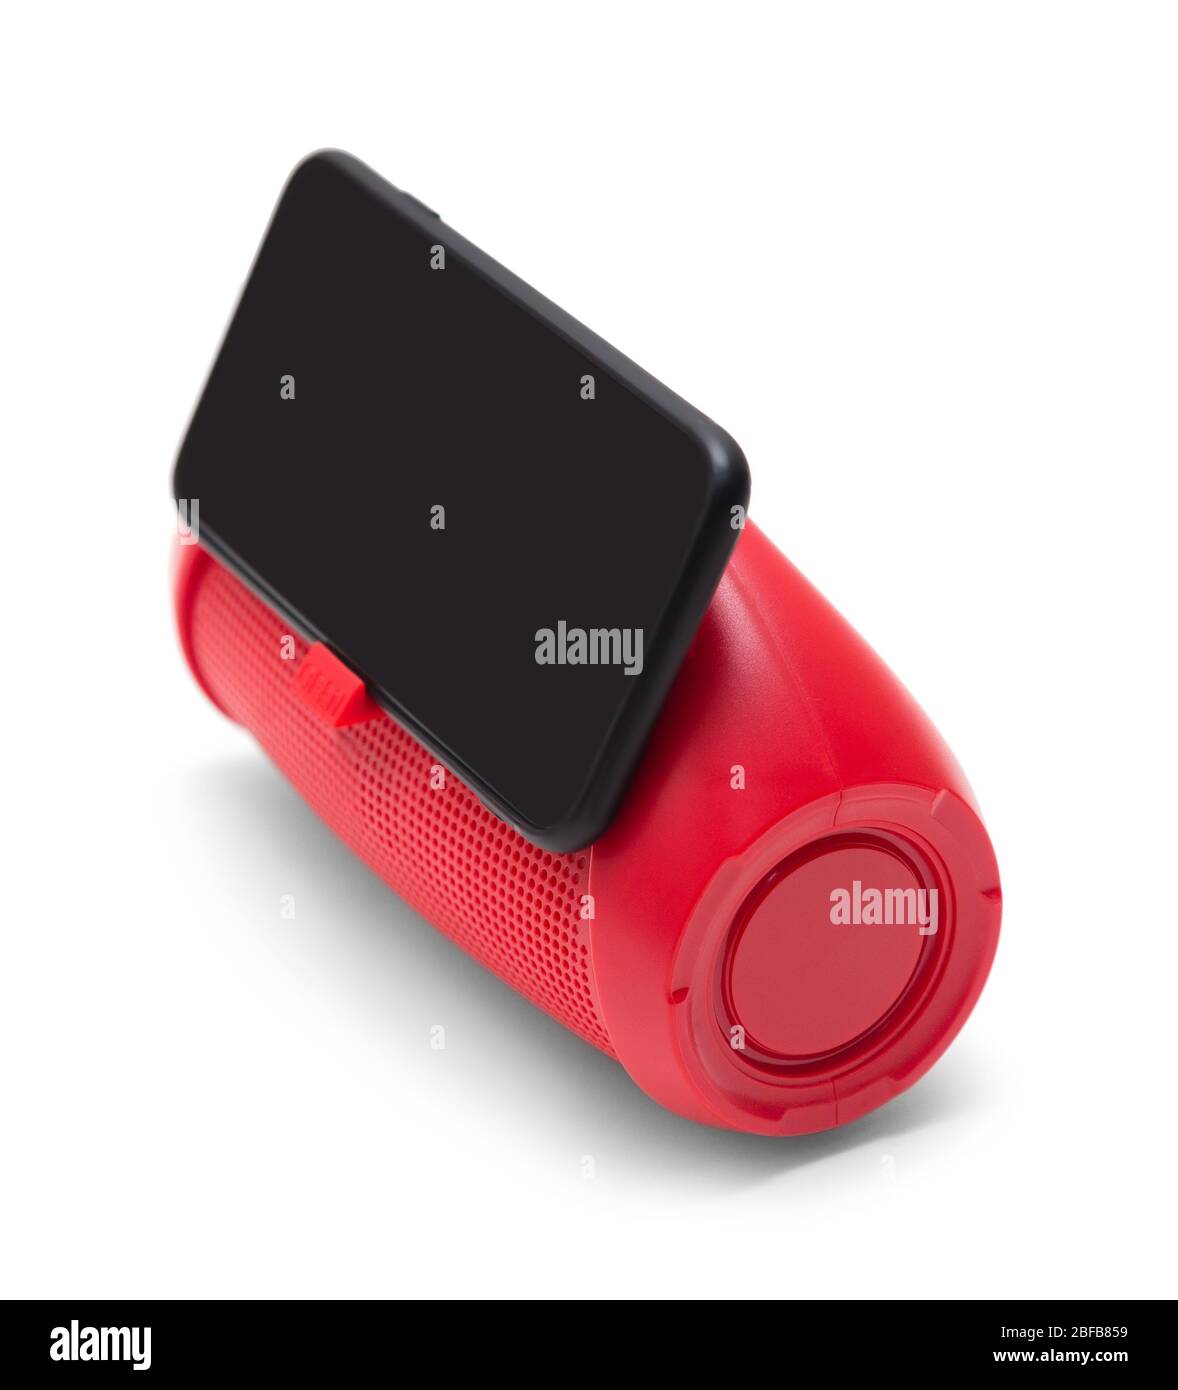 stereo portatile con altoparlante rosso per telefono cellulare con supporto per telefono e smarthone isolato su sfondo bianco vista laterale Foto Stock